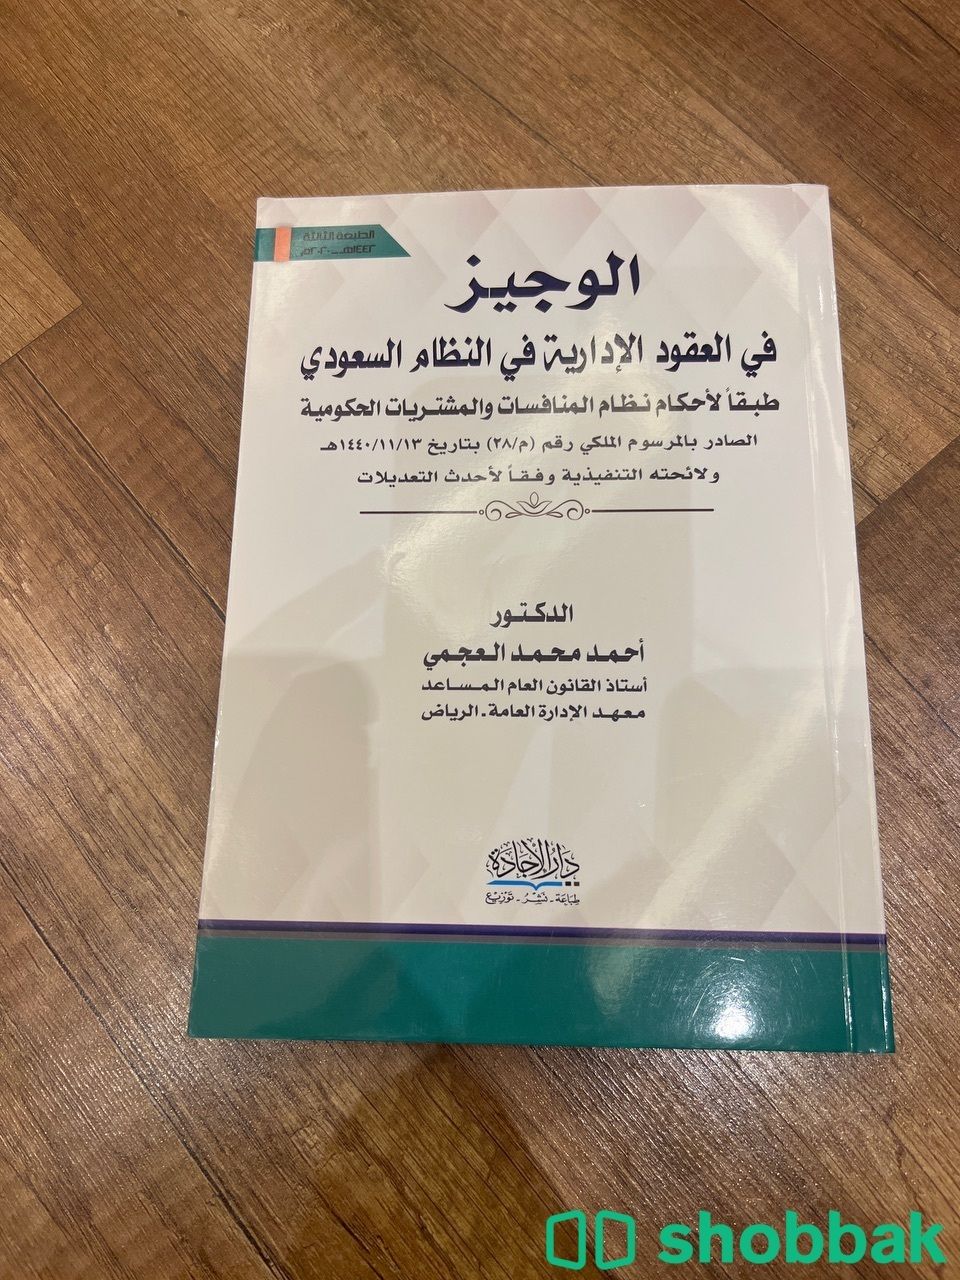  كتاب الوجيز في العقود الادارية في النظام السعودي  Shobbak Saudi Arabia